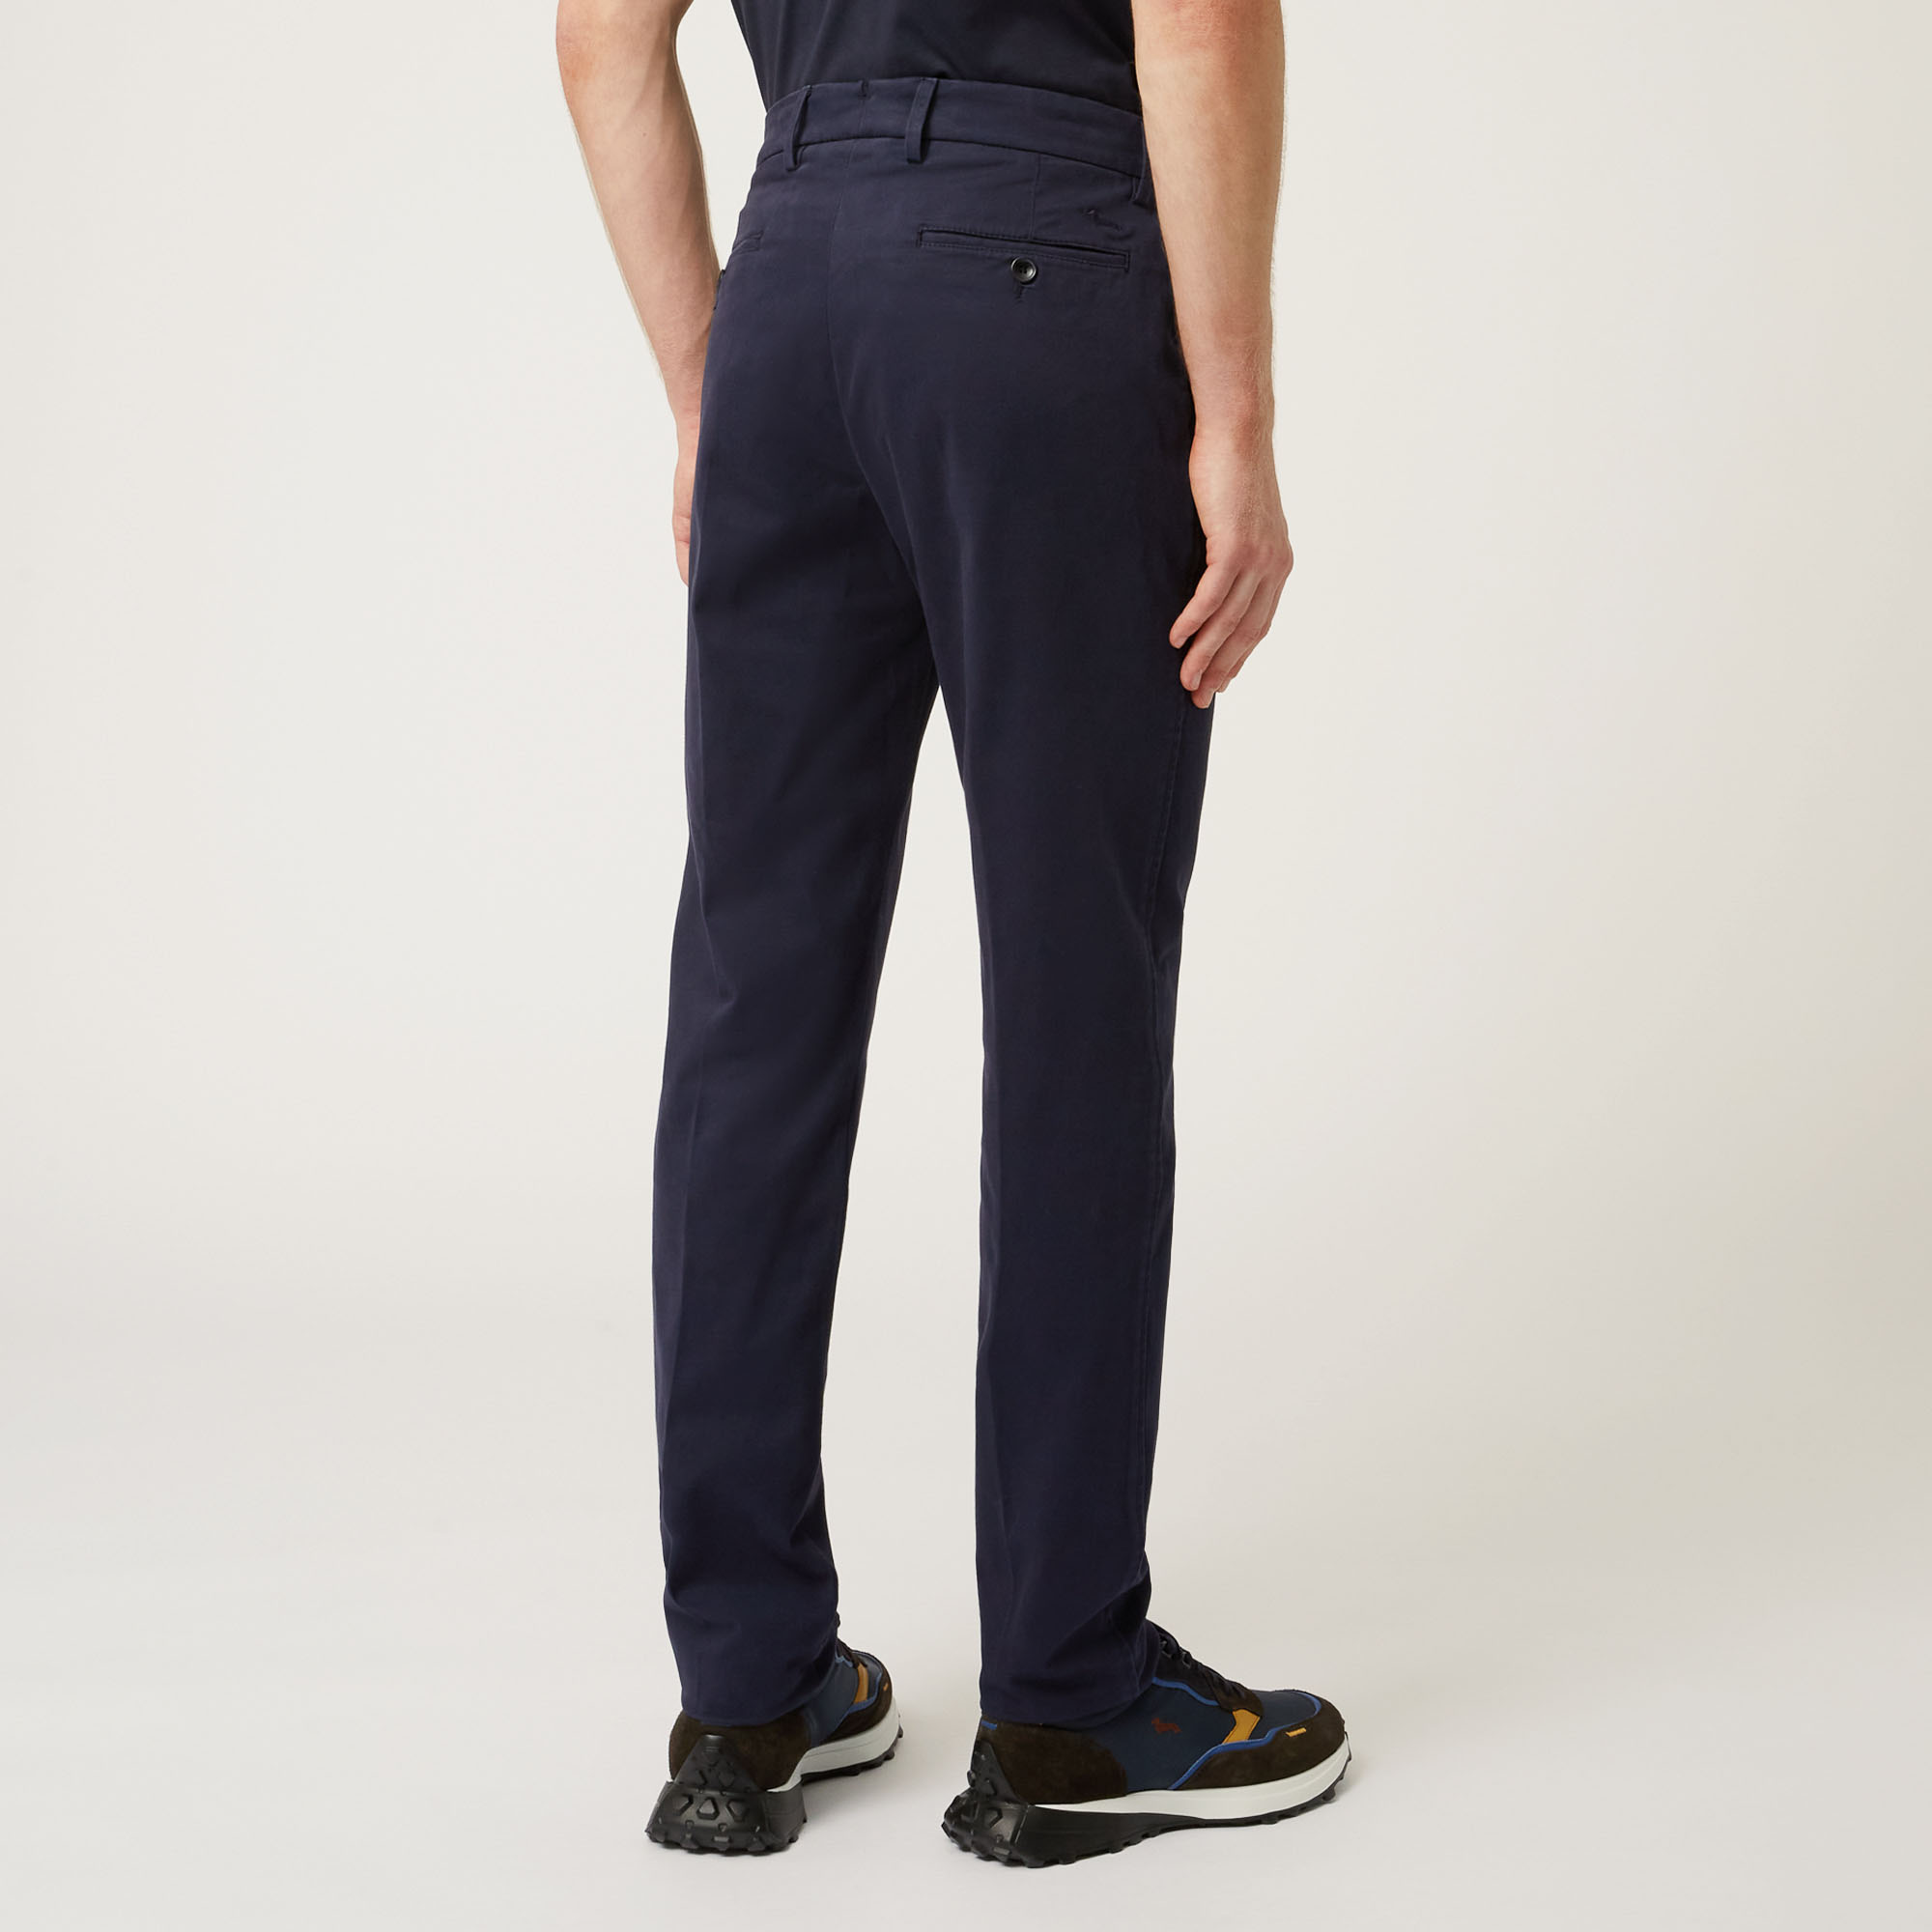 Pantalone Chino In Cotone Stretch Progetto Prisma